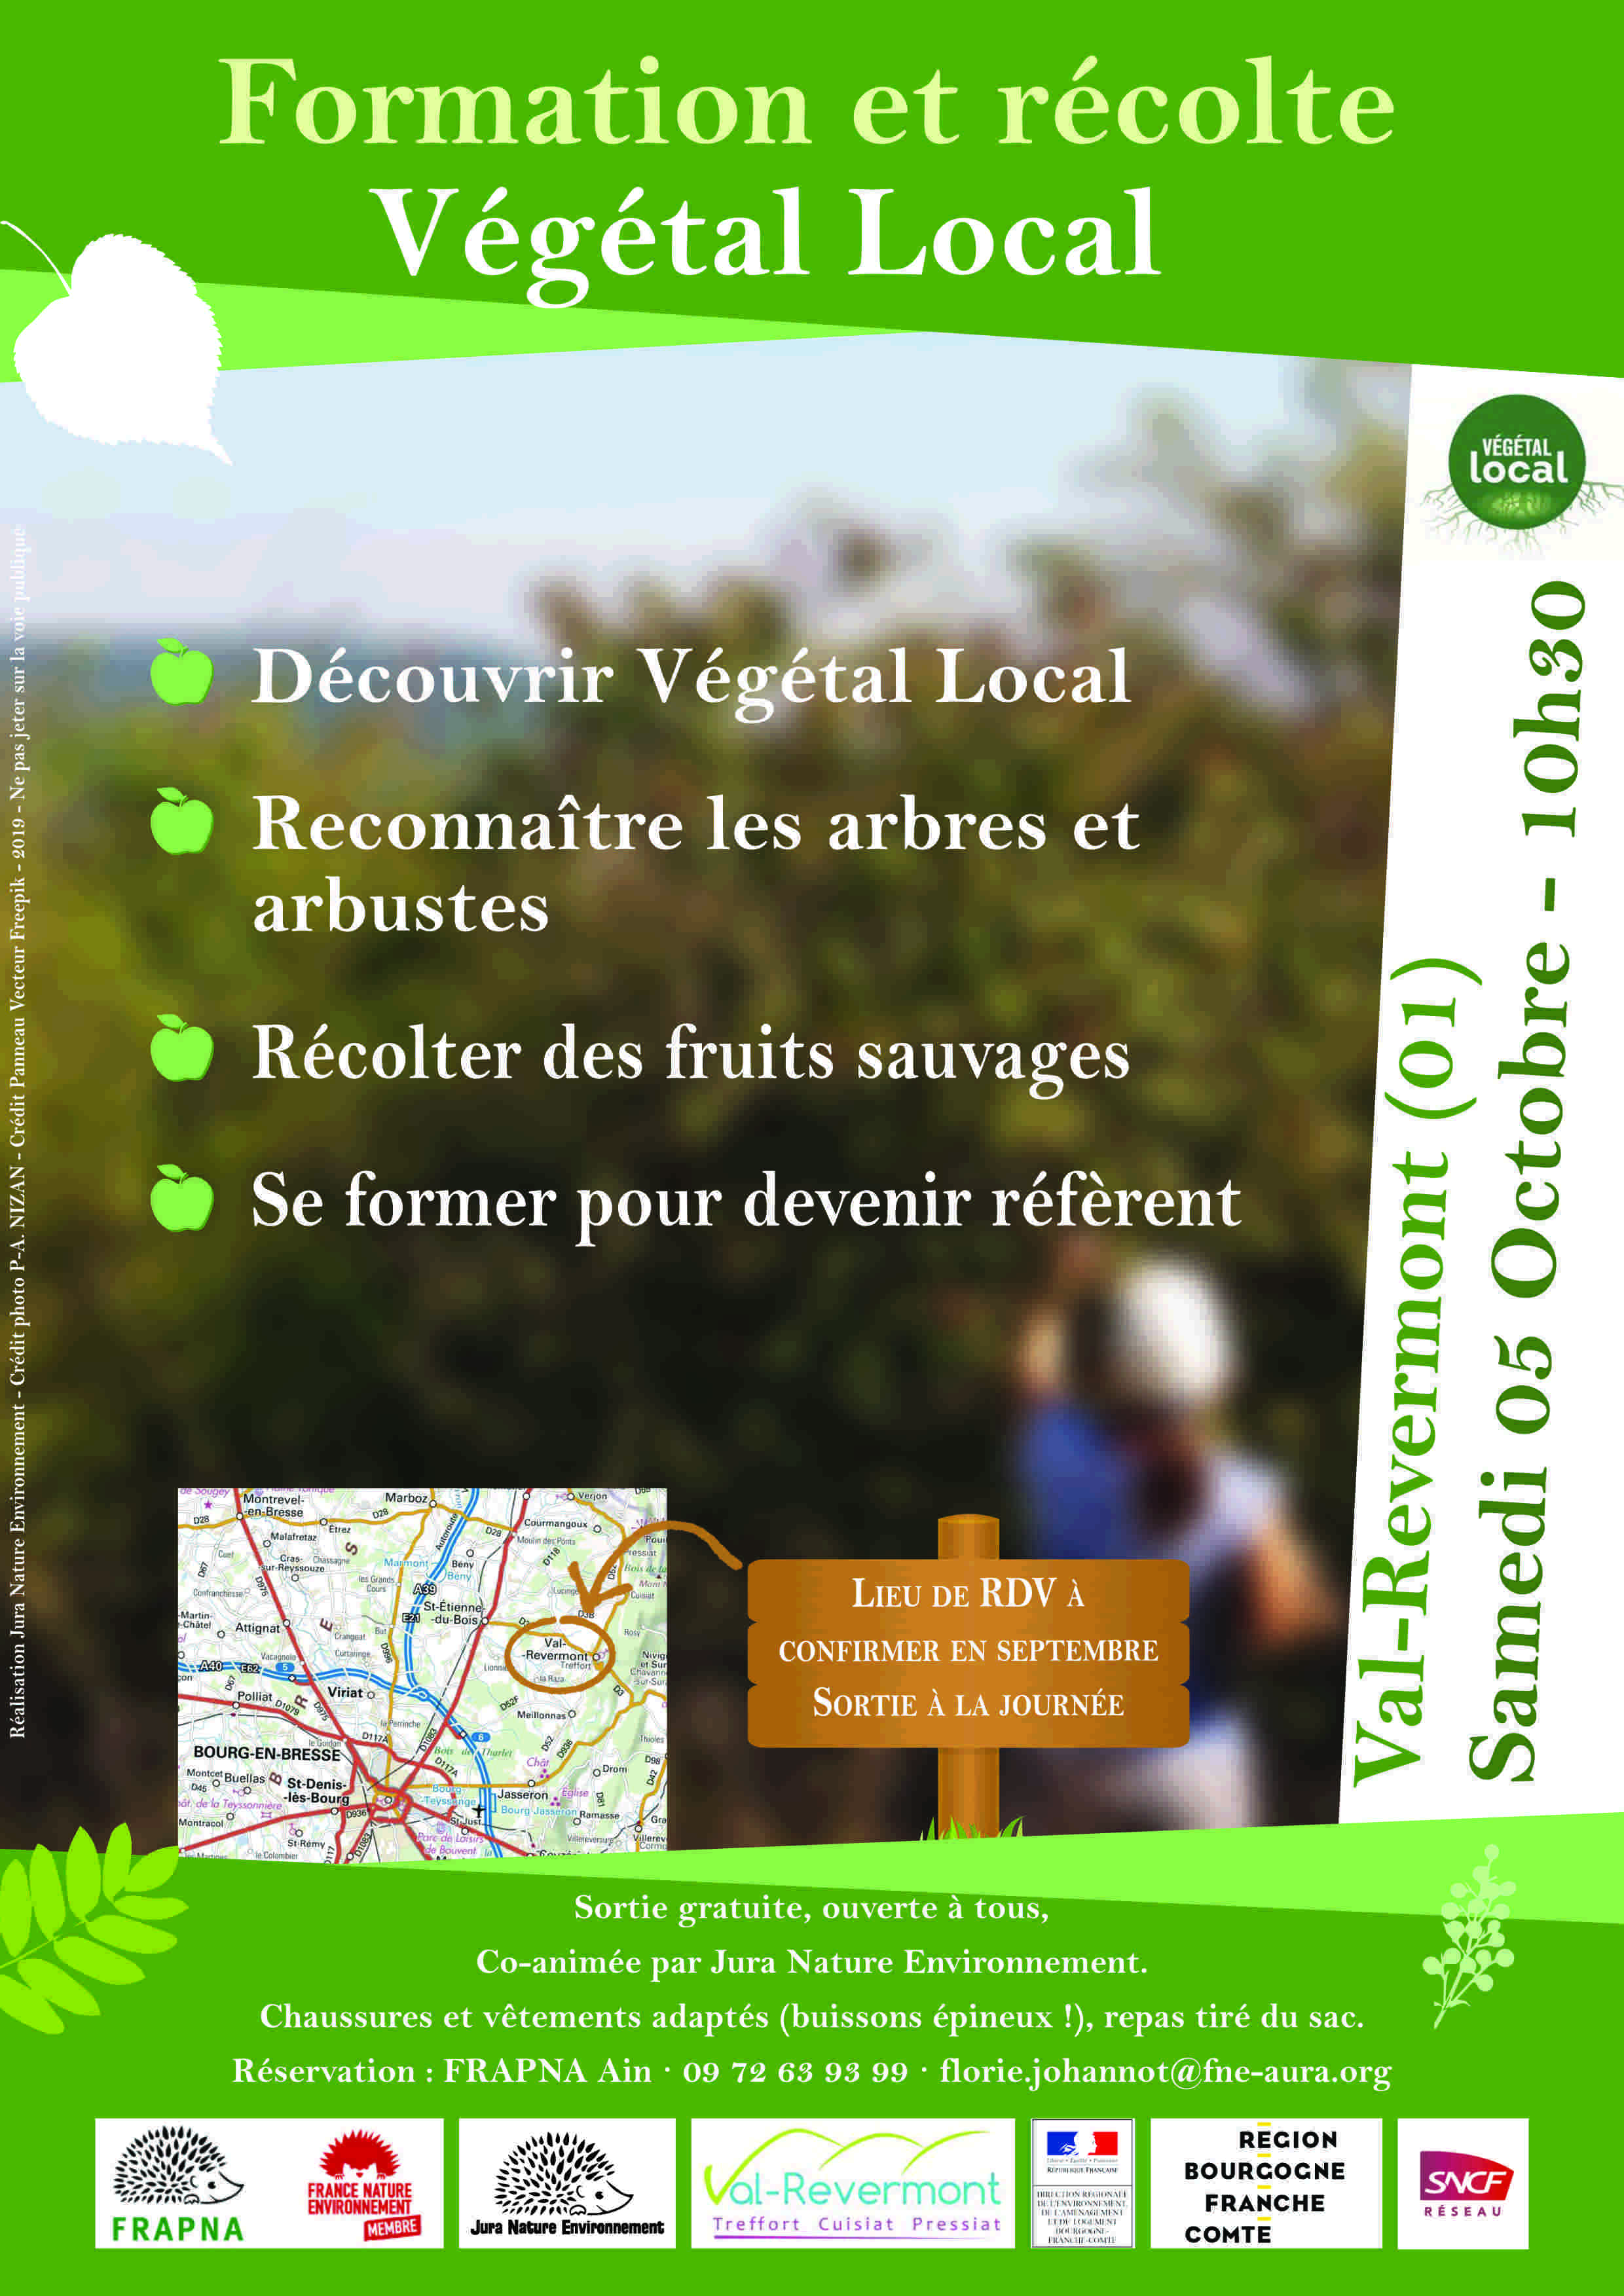 Végétal Local – L’agenda des formations automne 2019 !